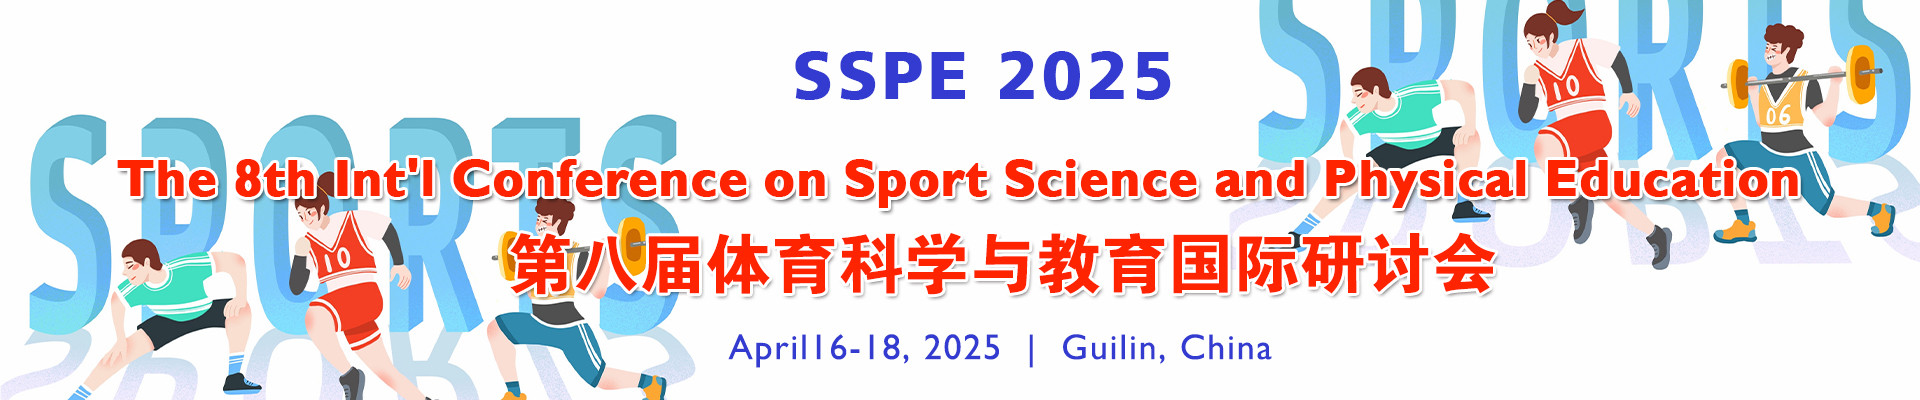 第八届体育科学与教育国际研讨会(SSPE 2025)